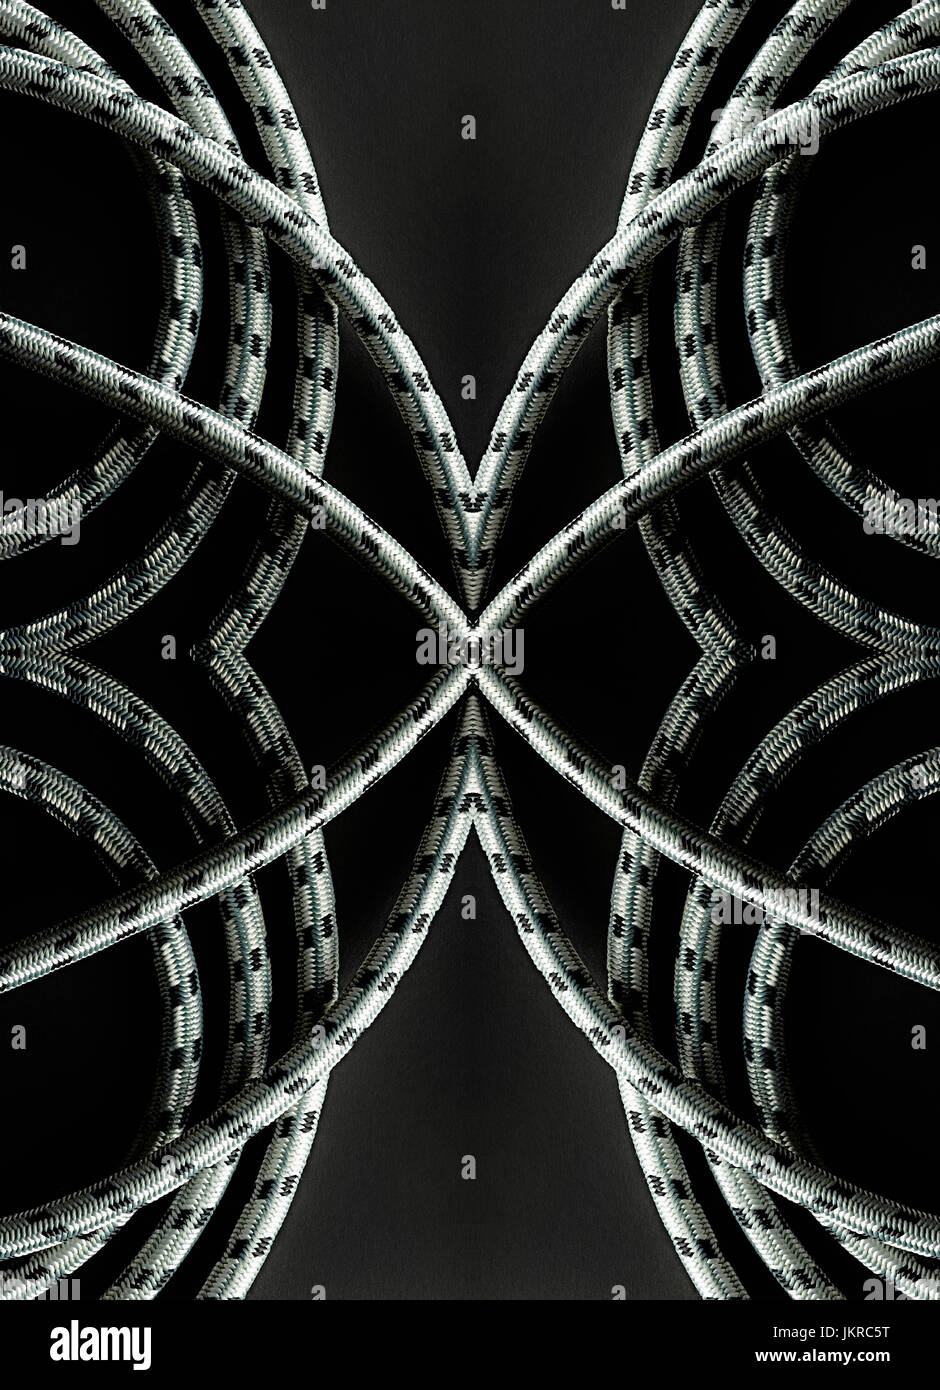 Kaleidoscopic image of ropes on black background Stock Photo